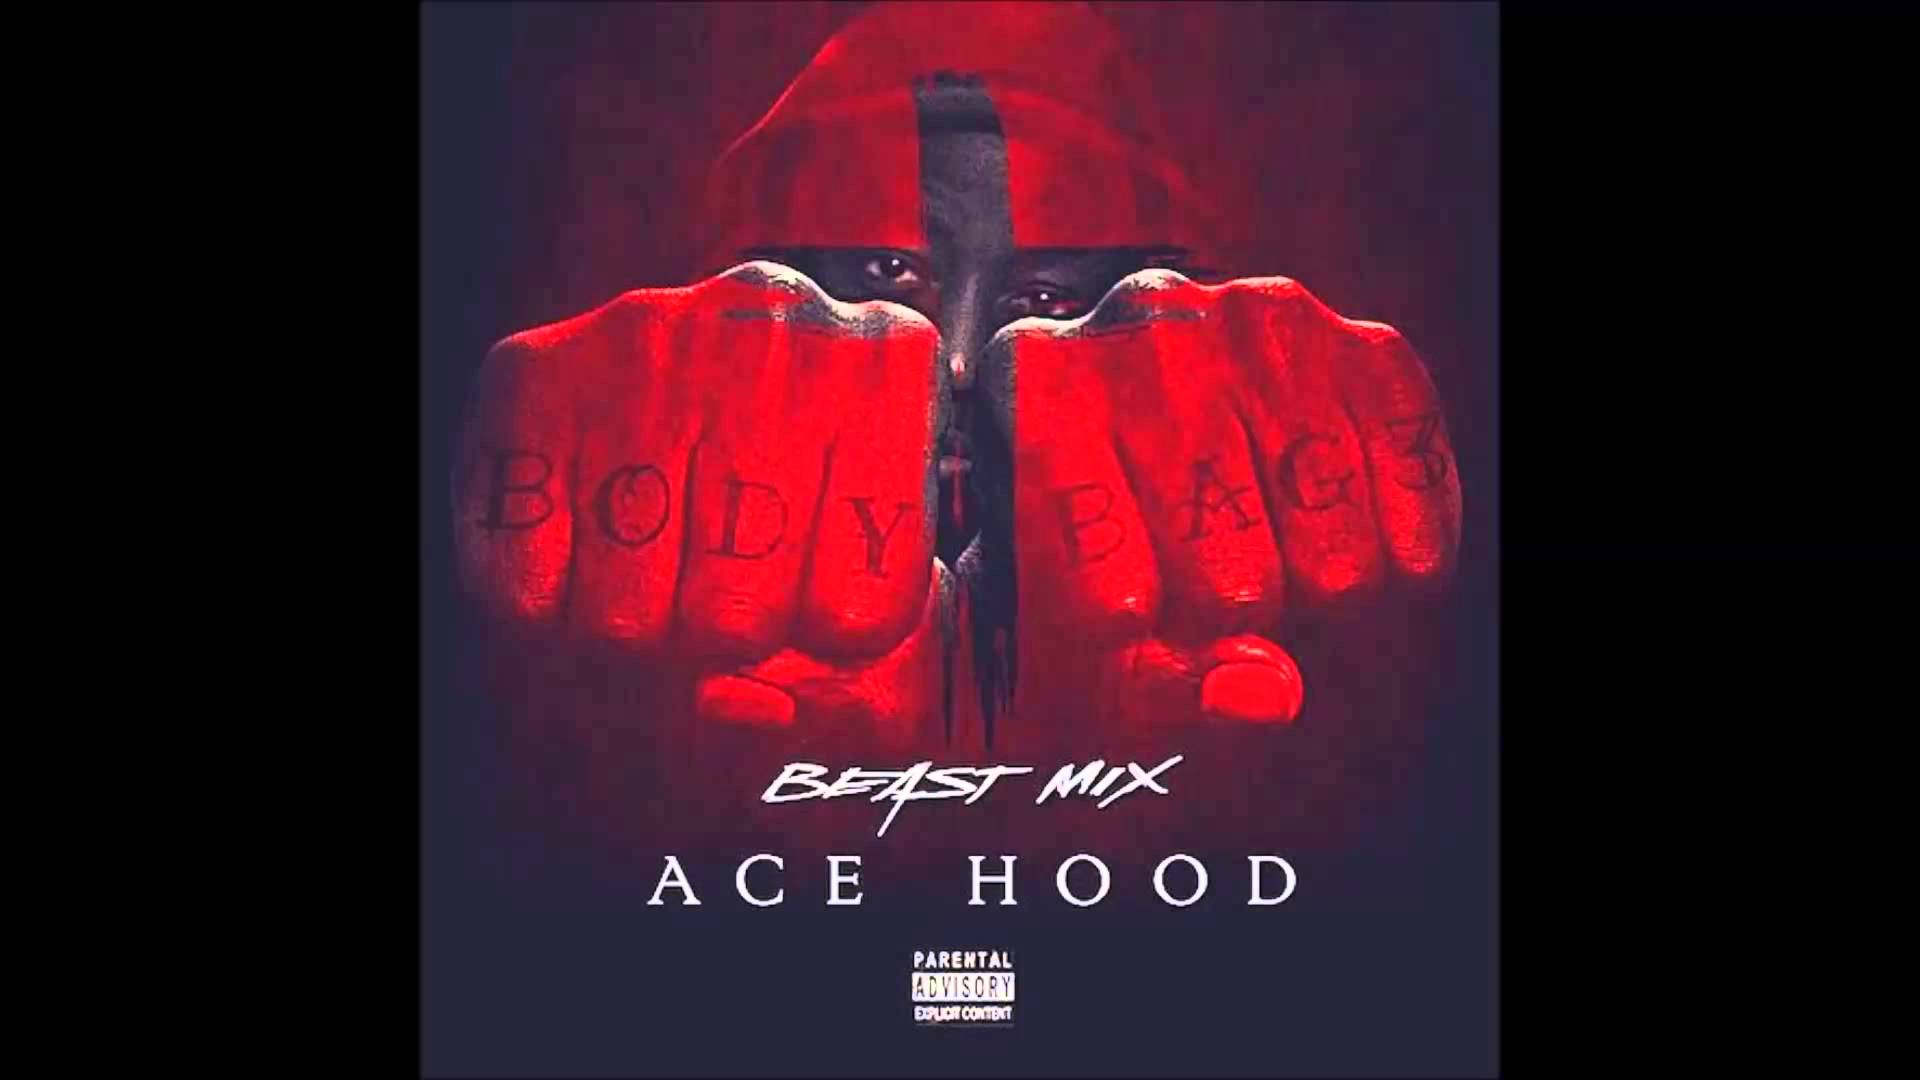 Ace Hood Me (Beast Mix)